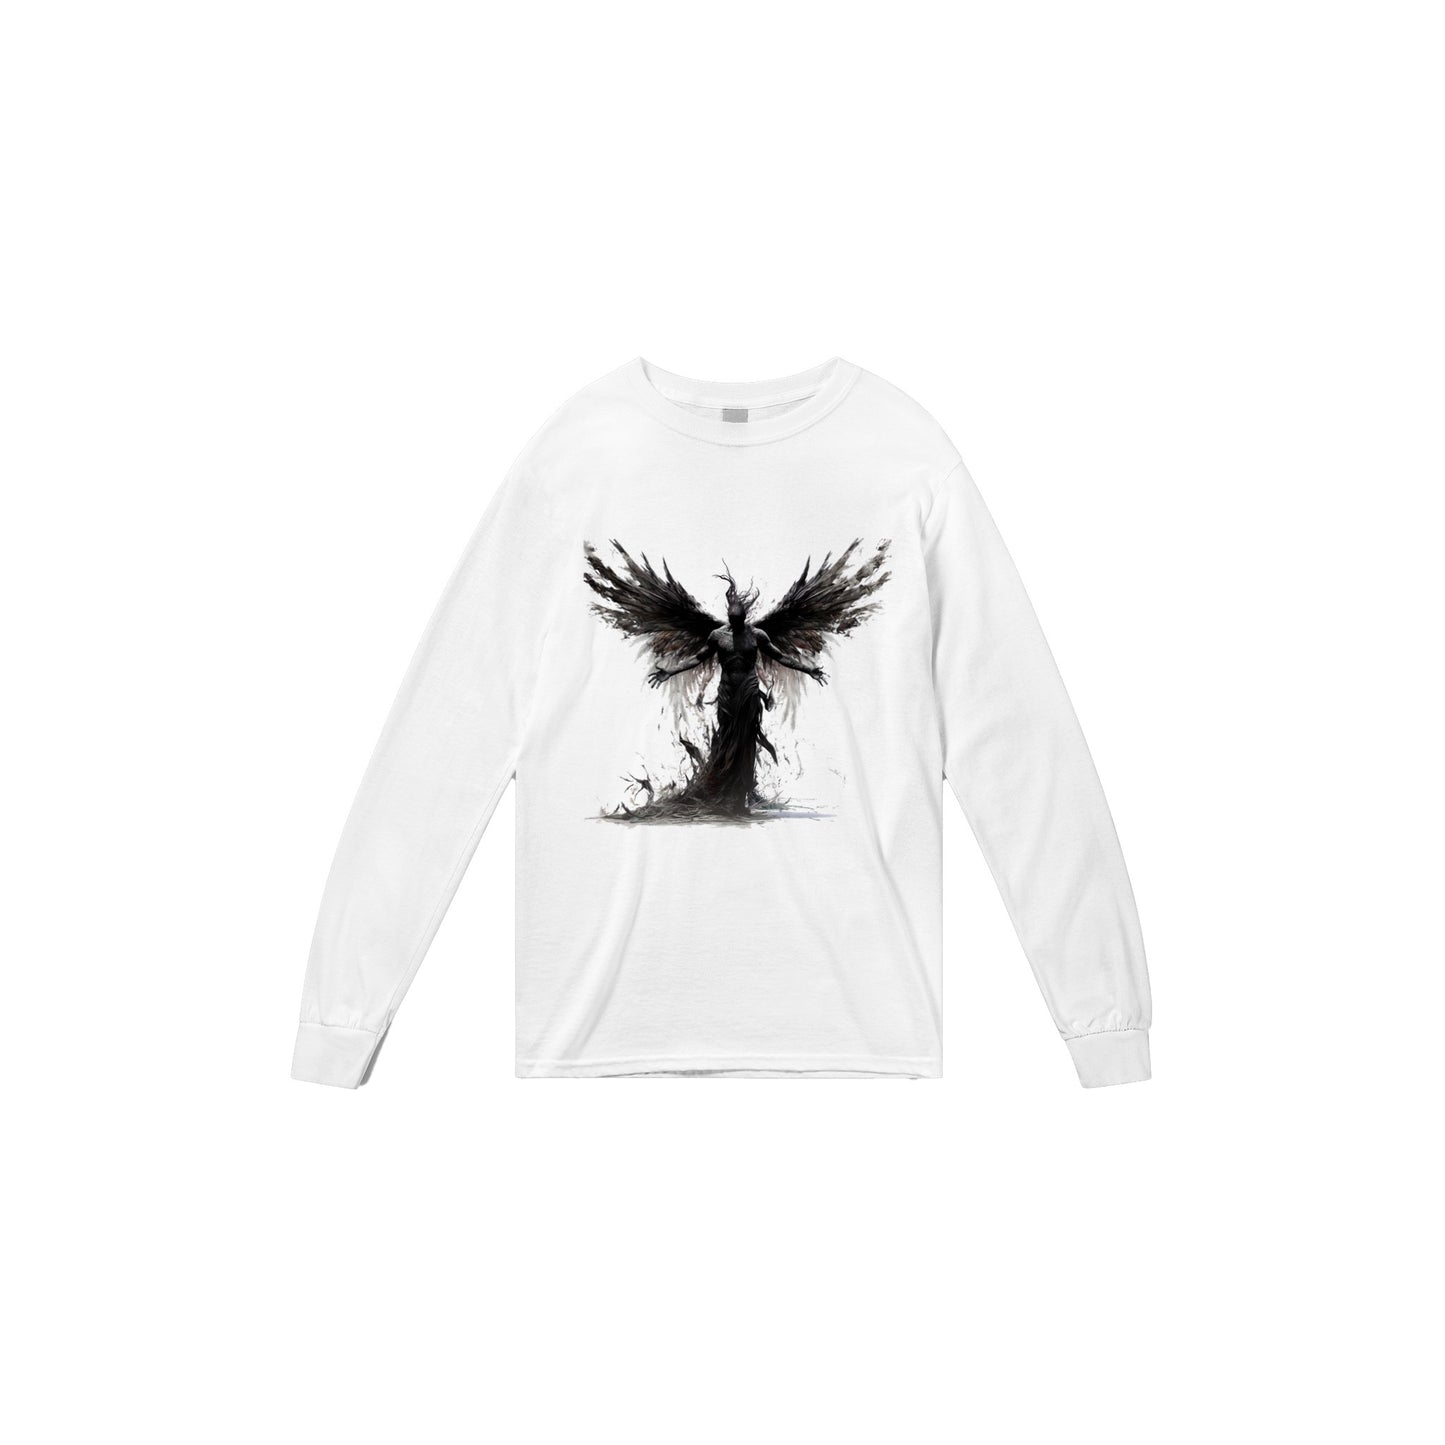 FallenD/Angel Classic  Longsleeve T-shirt